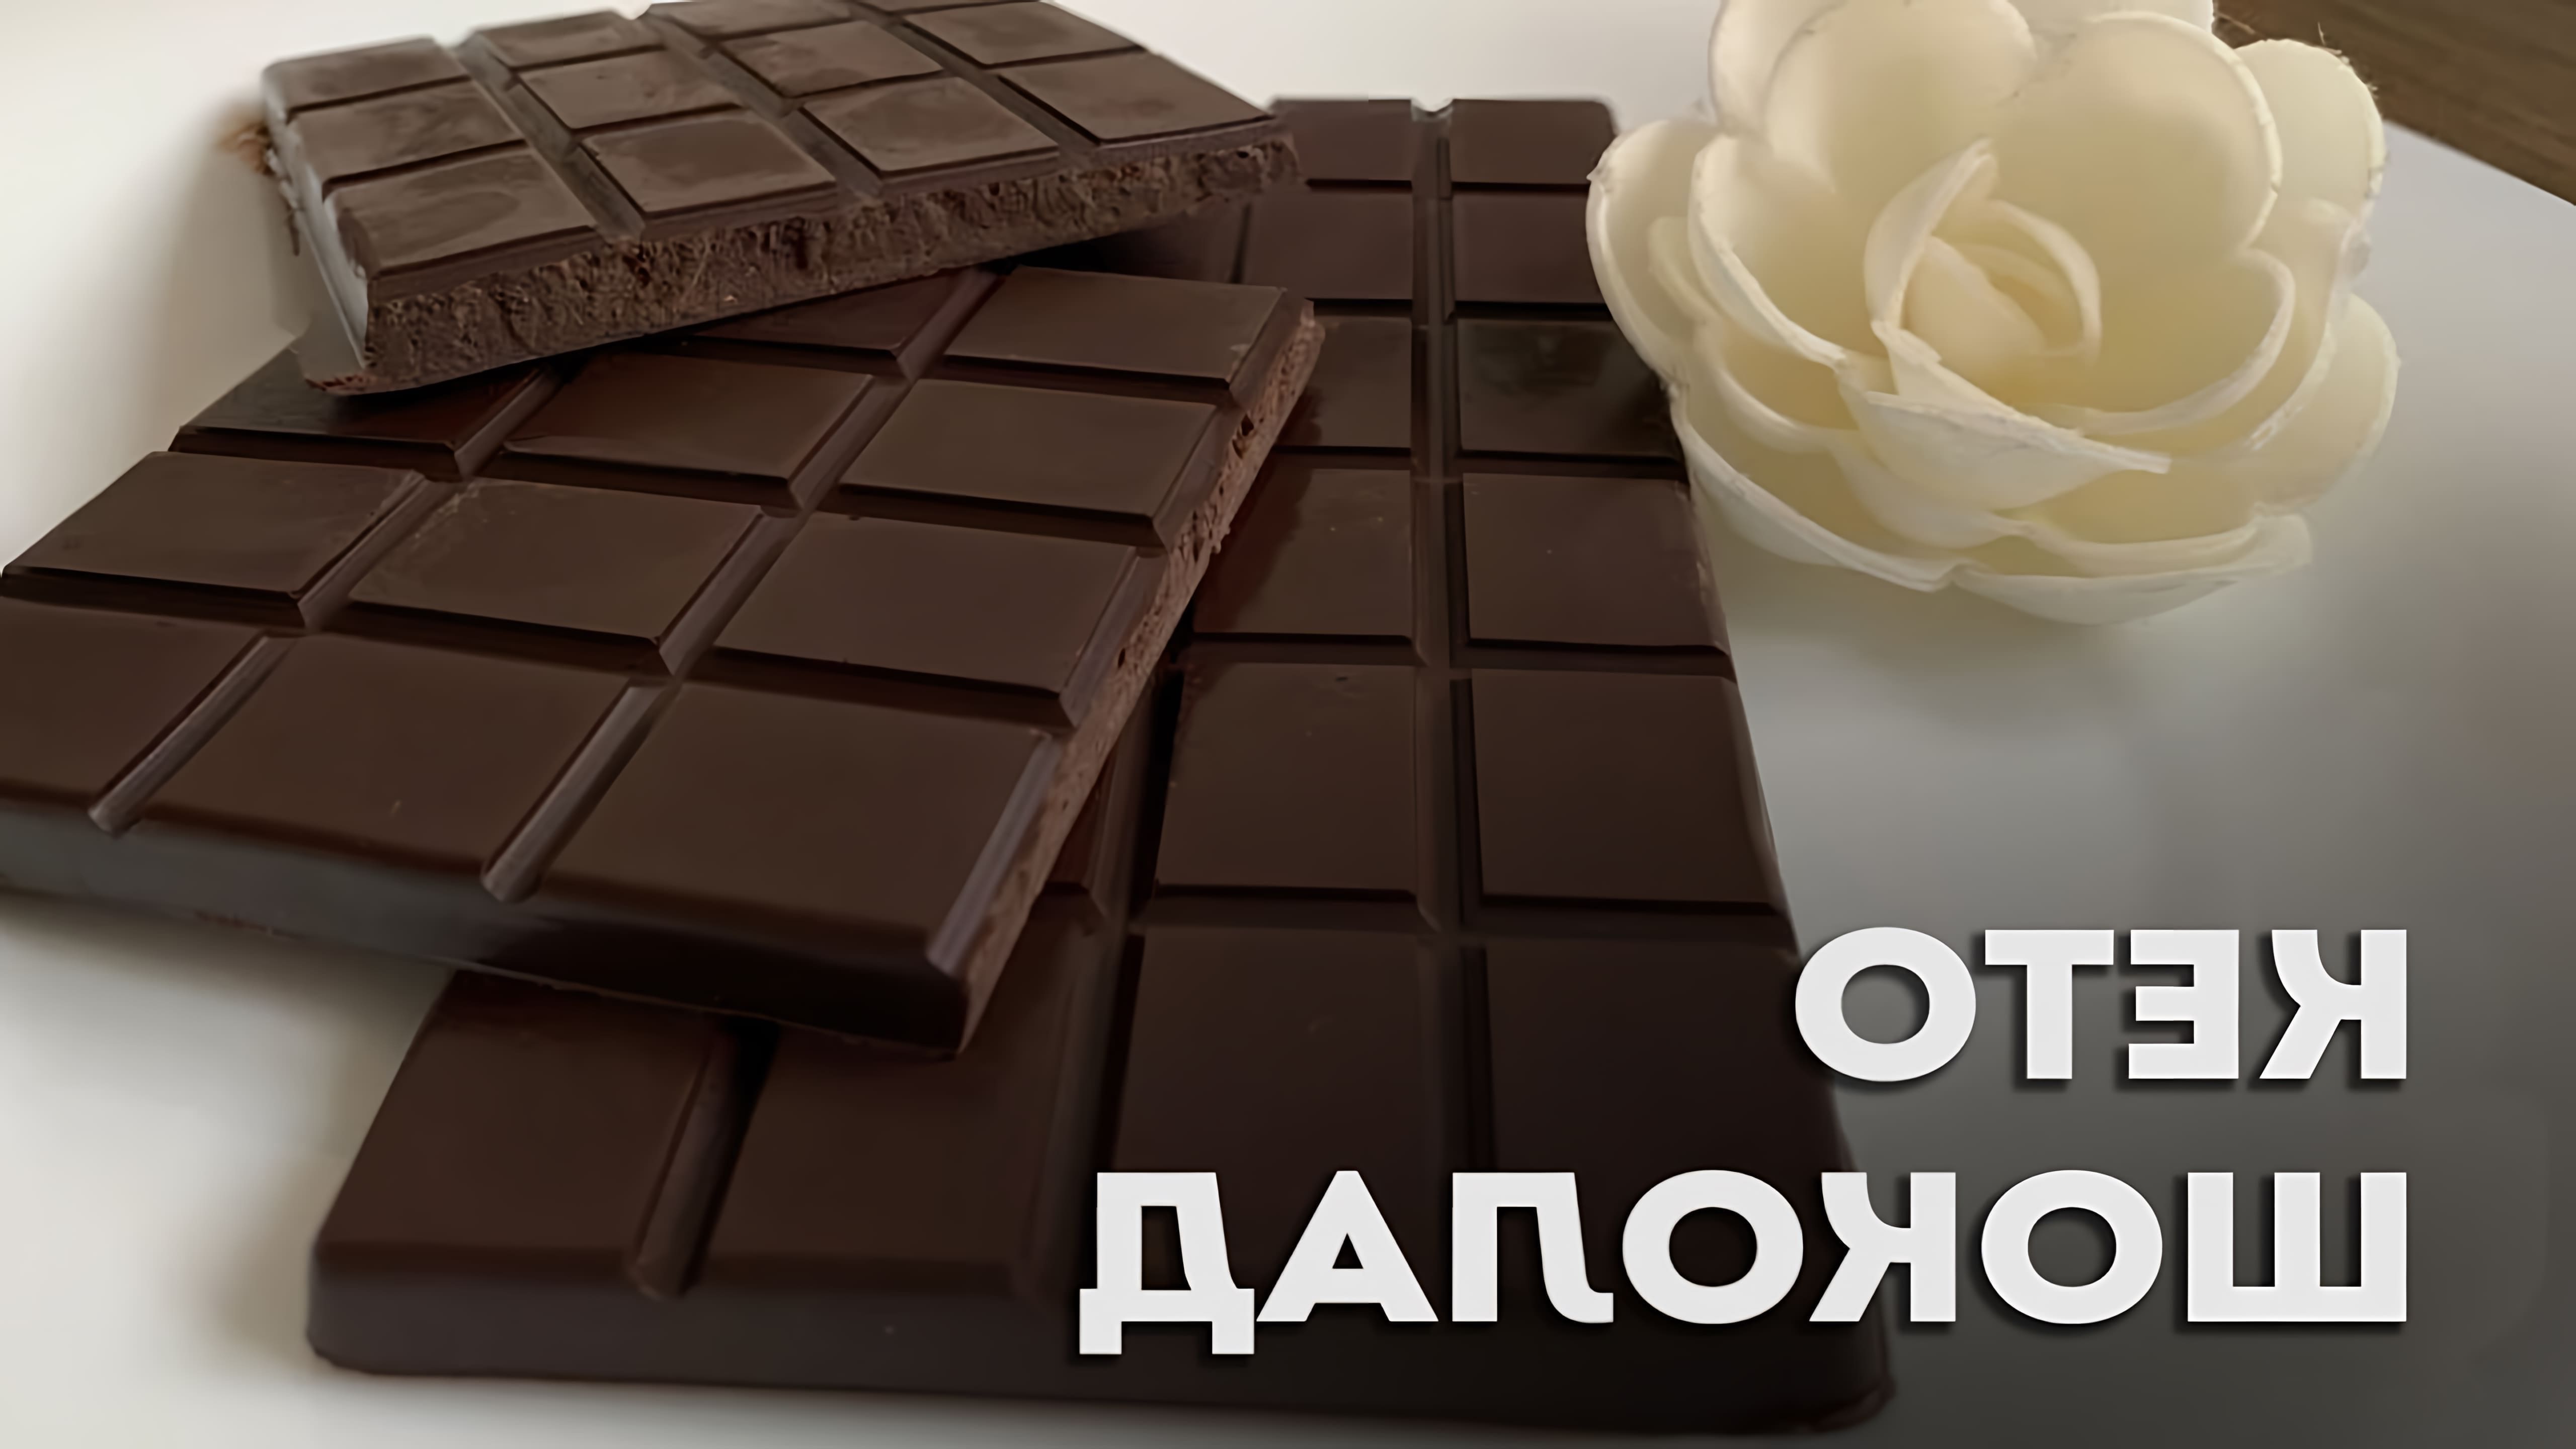 В этом видео демонстрируется процесс приготовления кето шоколада своими руками